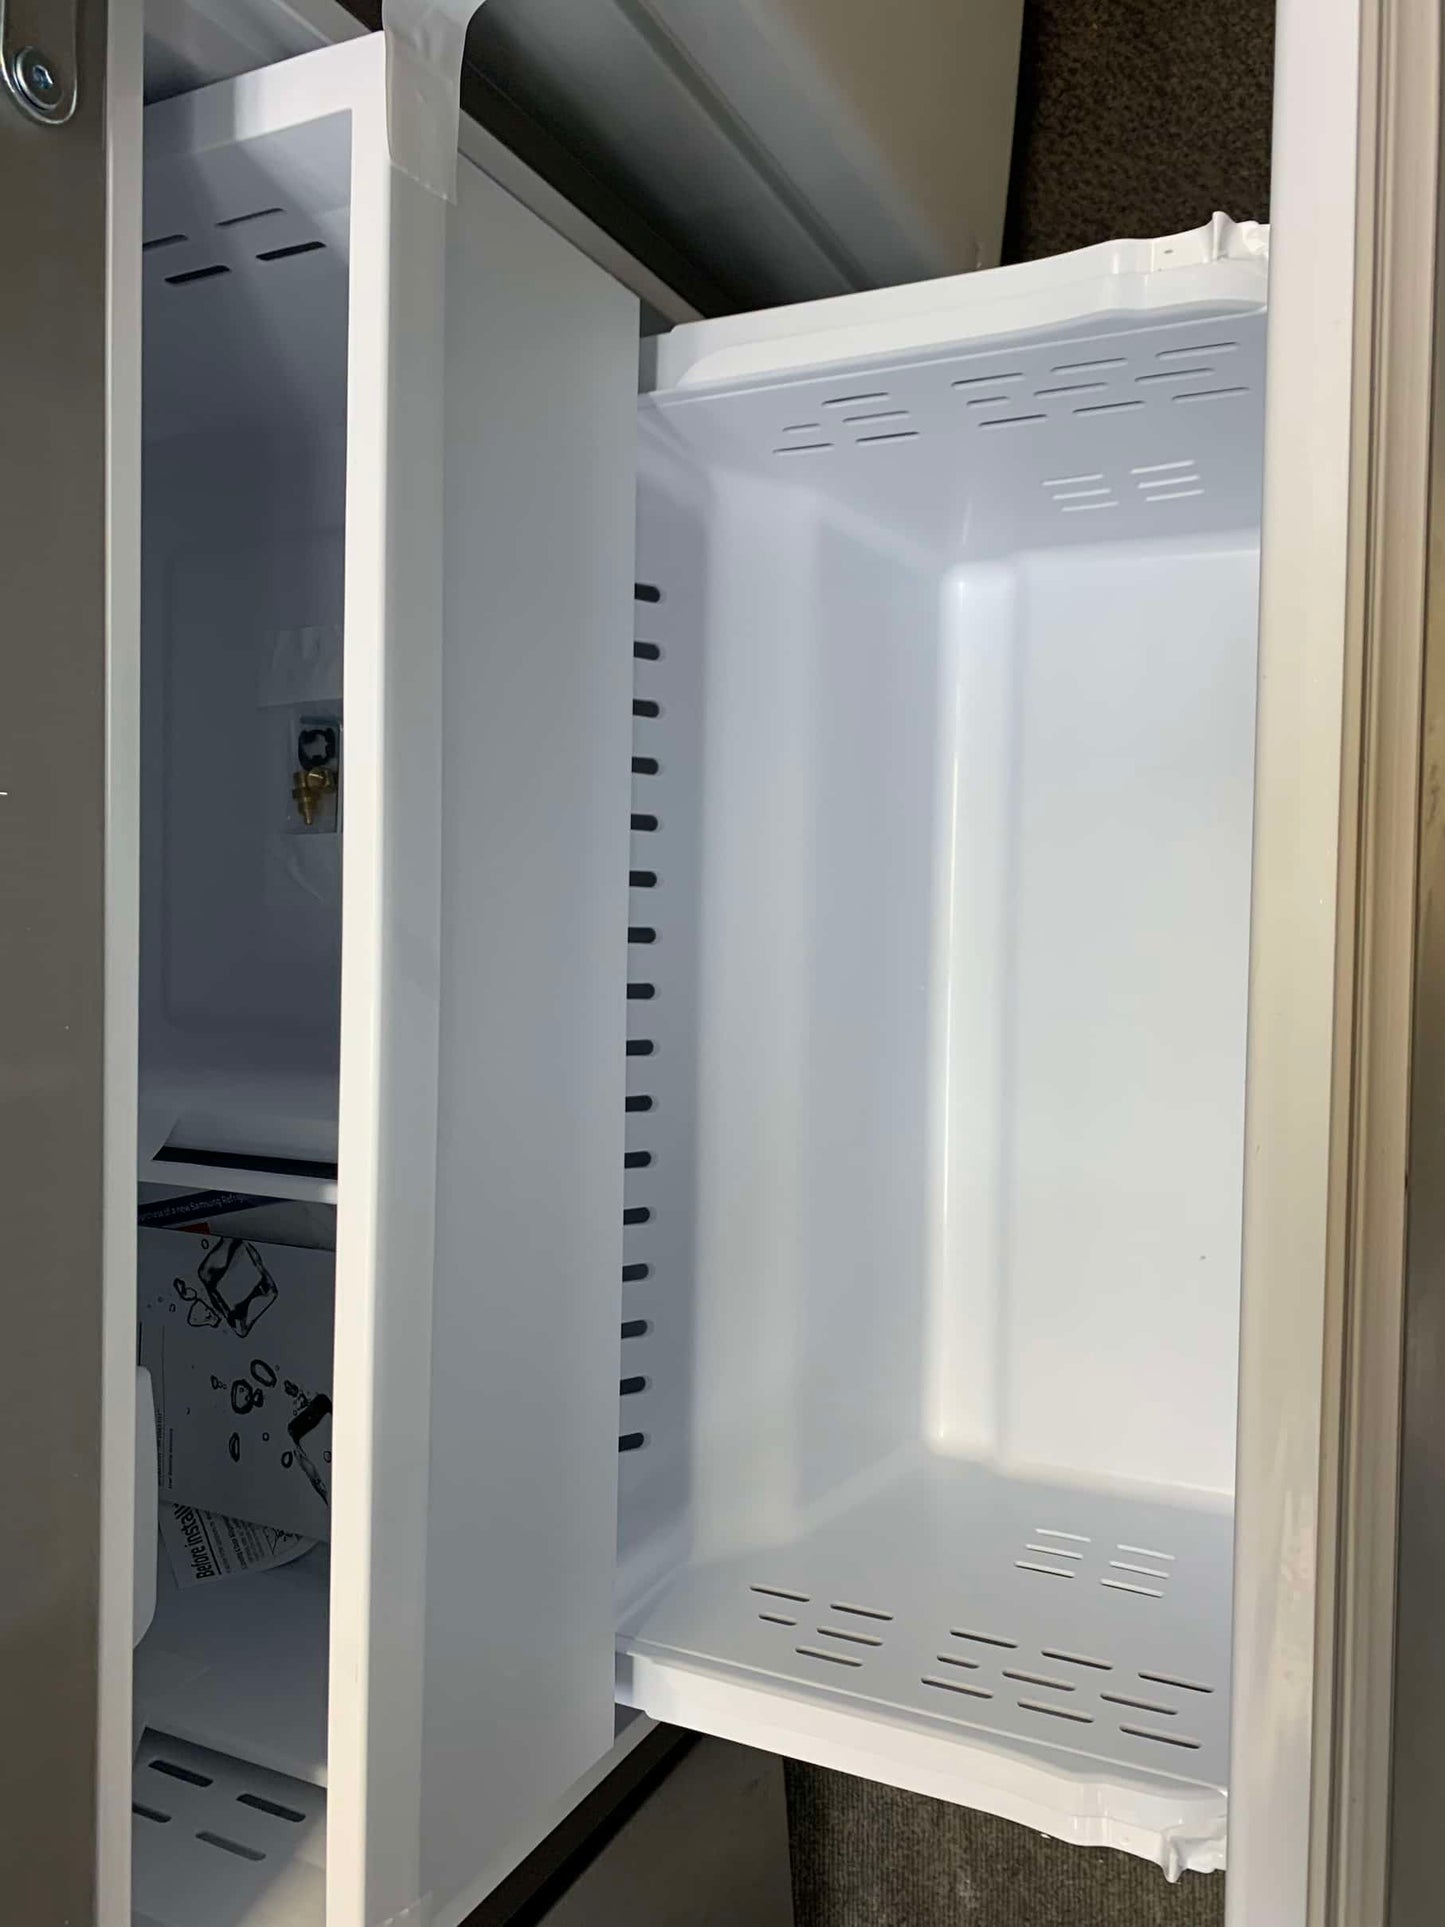 ★ Samsung Open Box 17.5 cu. ft. 3-Door French Door Smart Refrigerator in Stainless Steel, Counter Depth RF3382